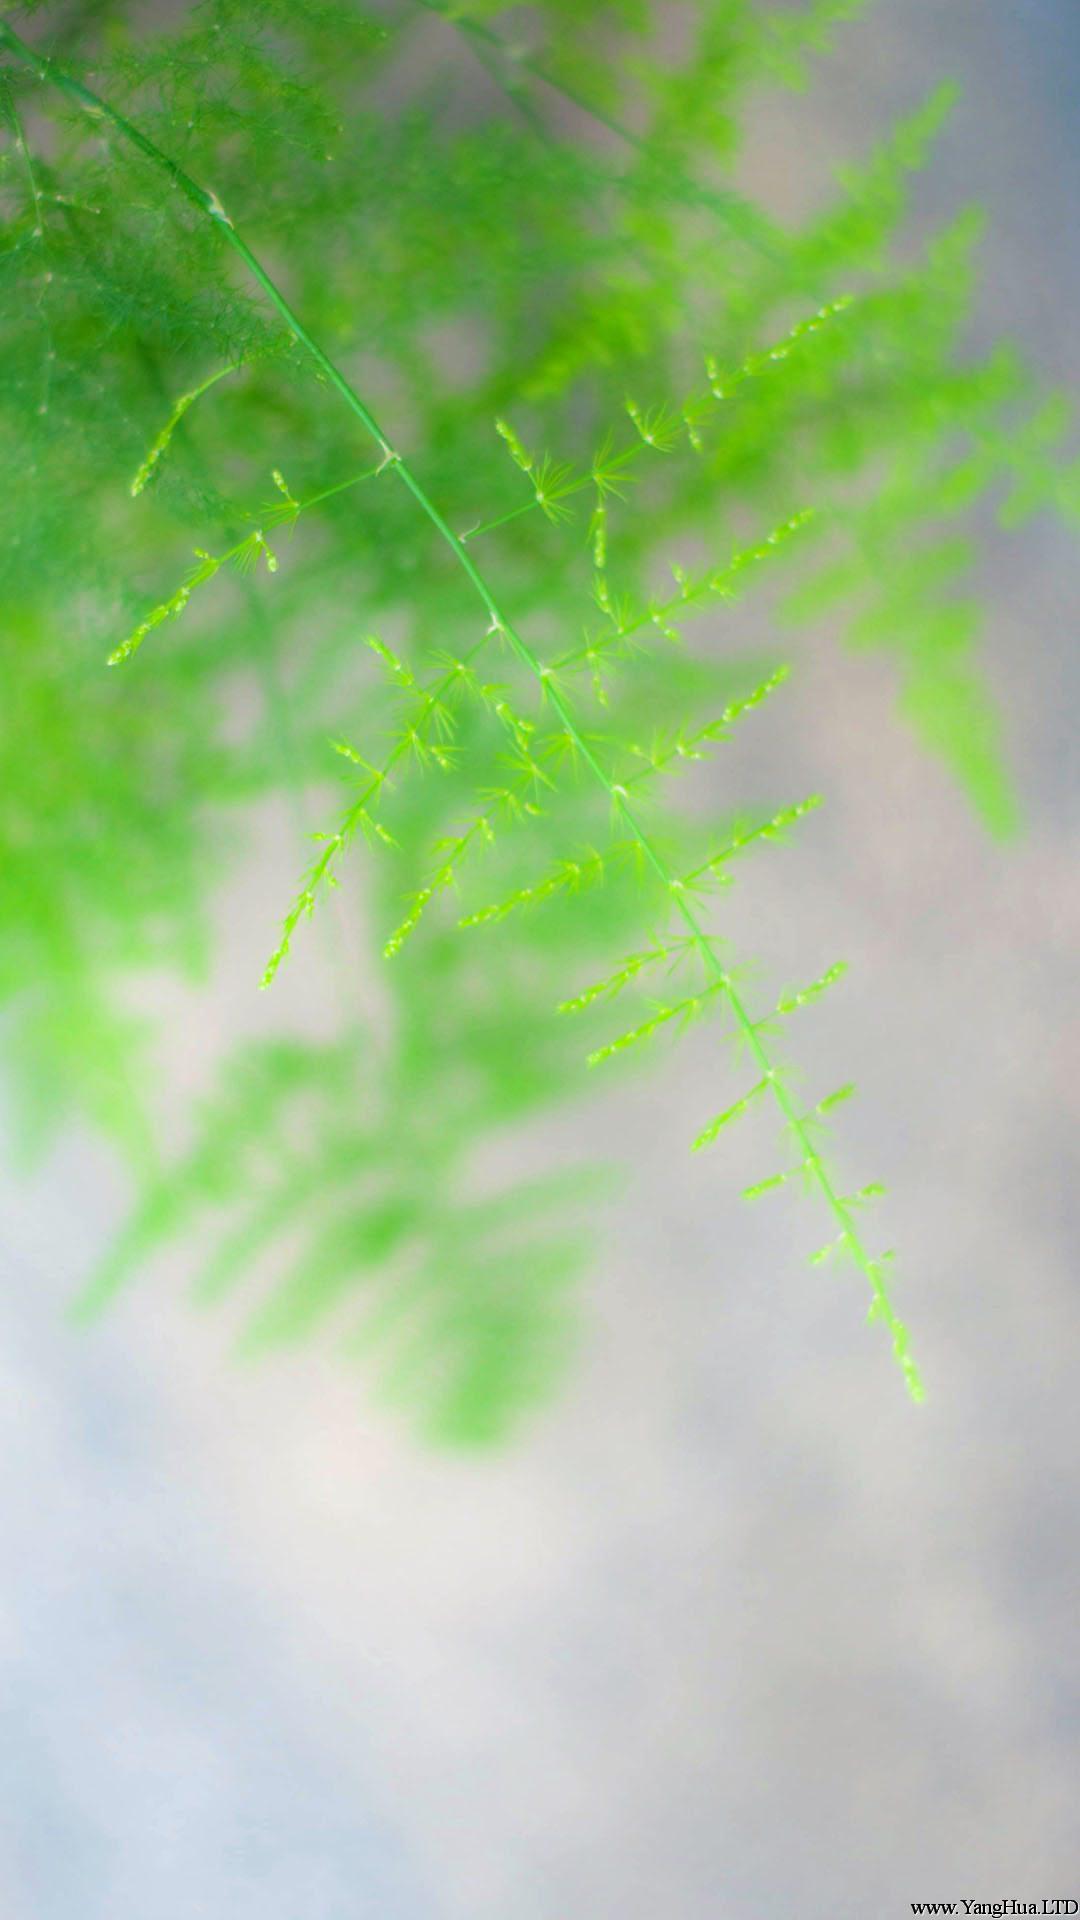 文竹手機壁紙圖片-翠綠的文竹